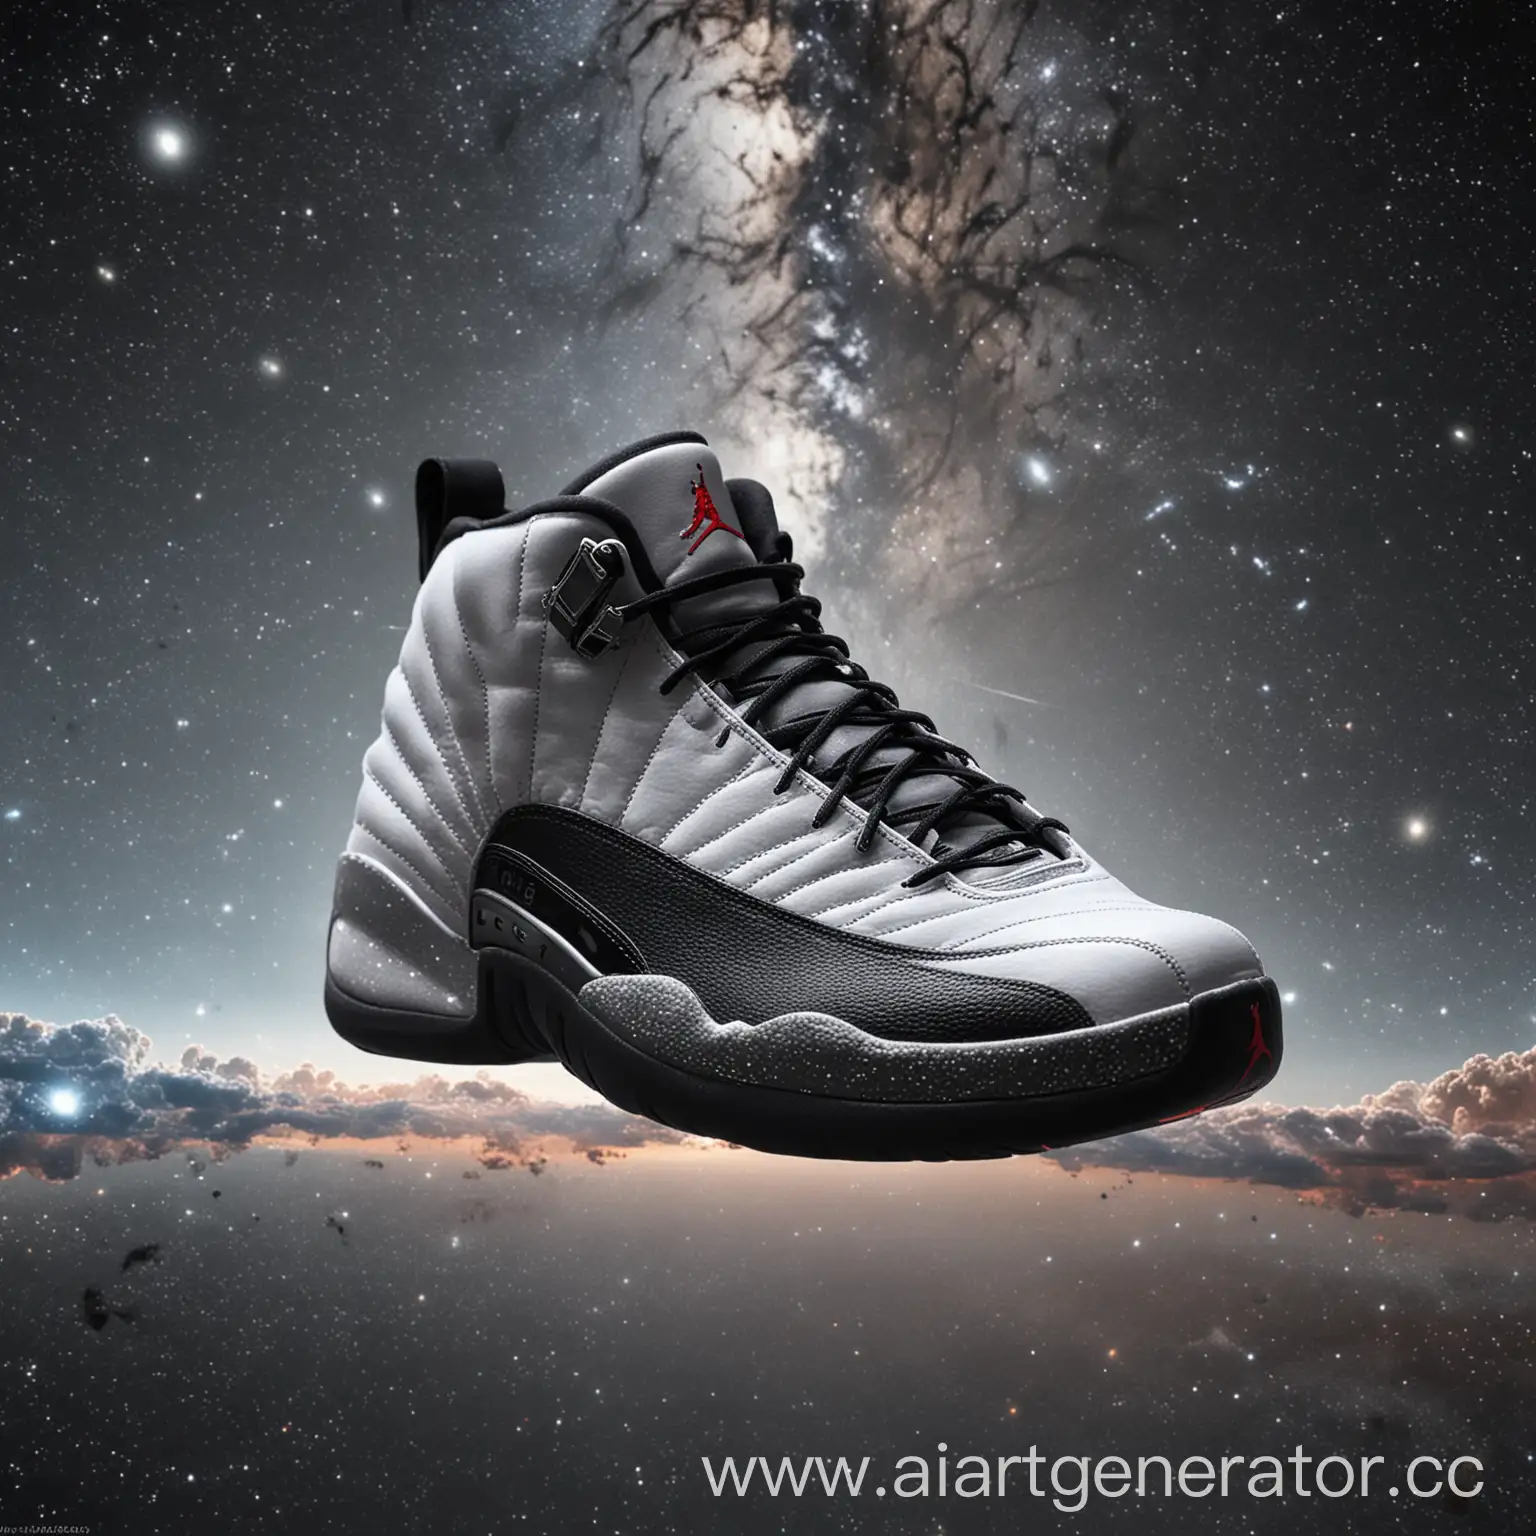 кроссовки  Nike air jordan 12 в космосе 4к качество